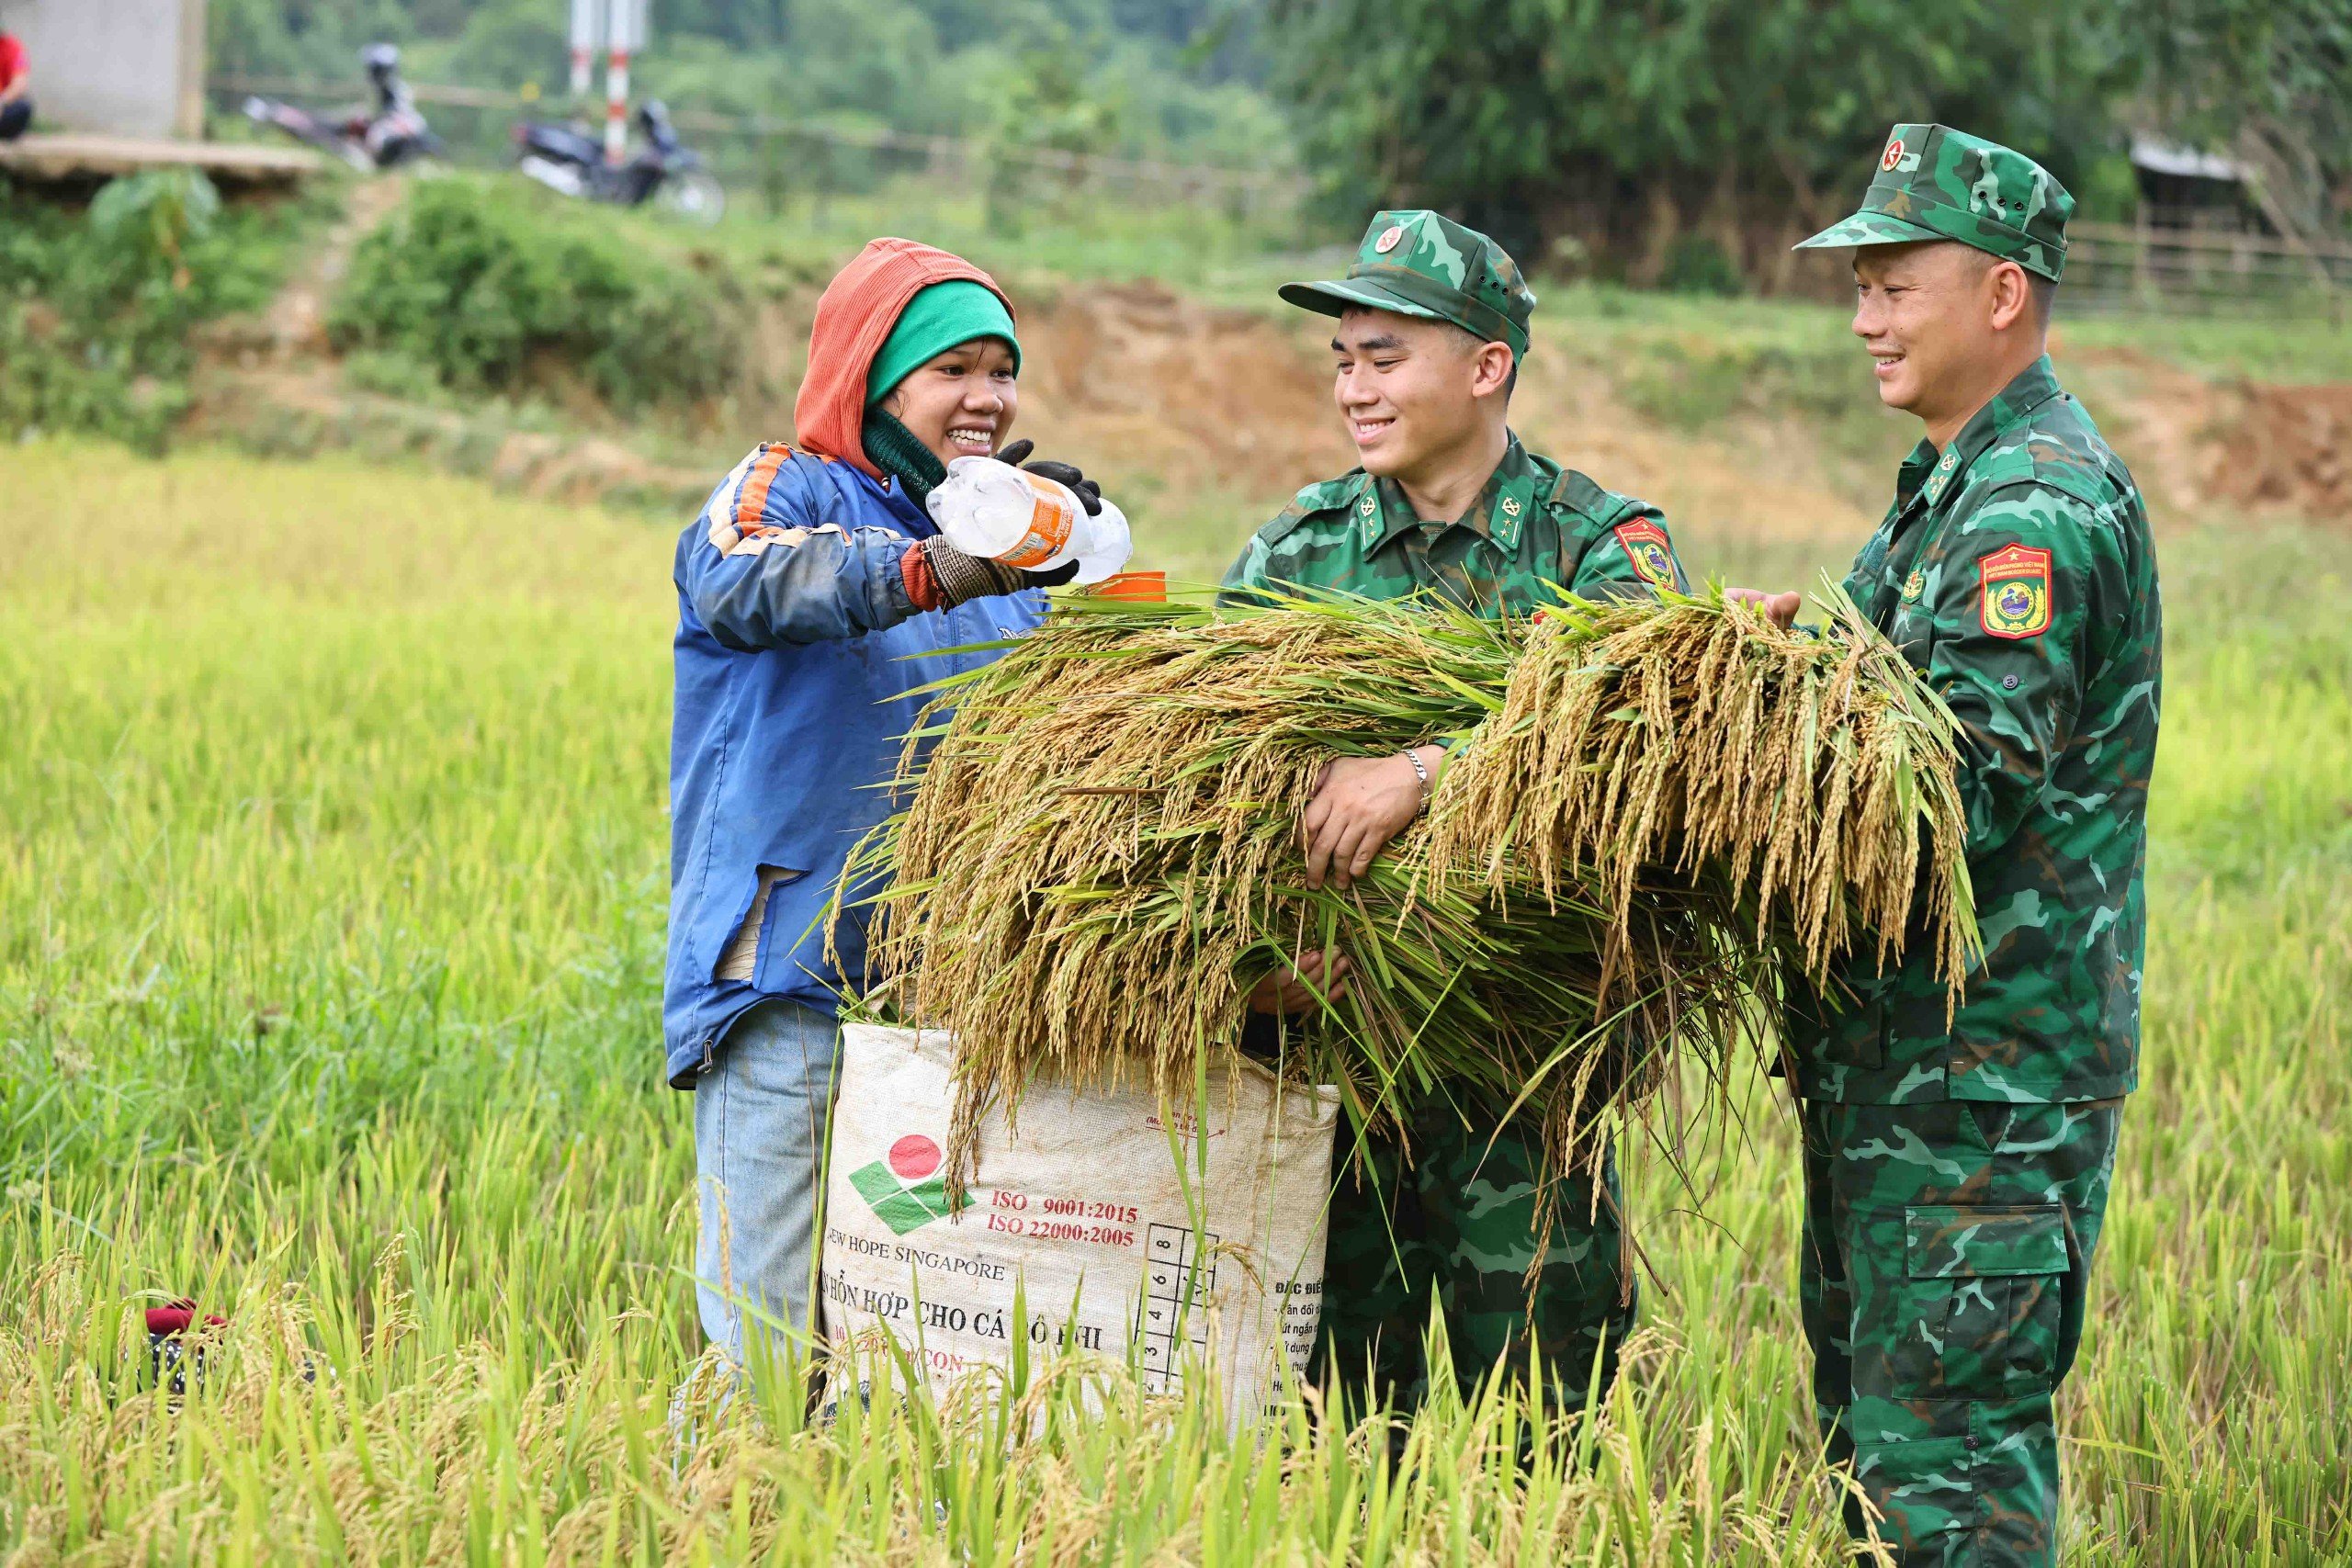 Mặc dù thời tiết nắng gay gắt nhưng cán bộ, chiến sĩ rất tích cực, hỗ trợ người dân thu hoạch lúa để kịp phơi khô trước khi mùa mưa tới